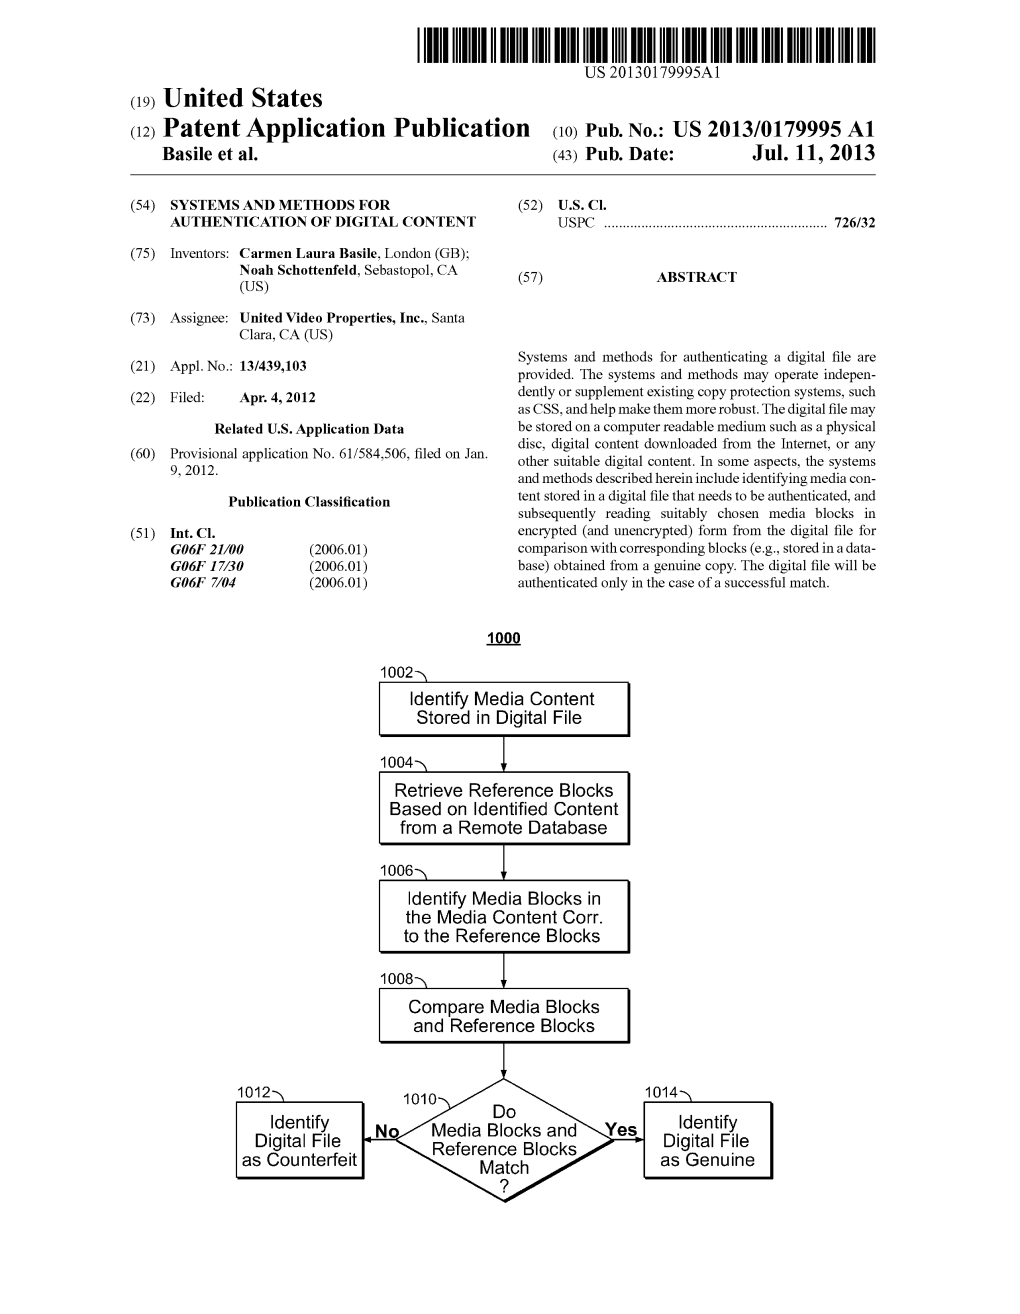 (12) Patent Application Publication (10) Pub. No.: US 2013/017.9995 A1 Basile Et Al